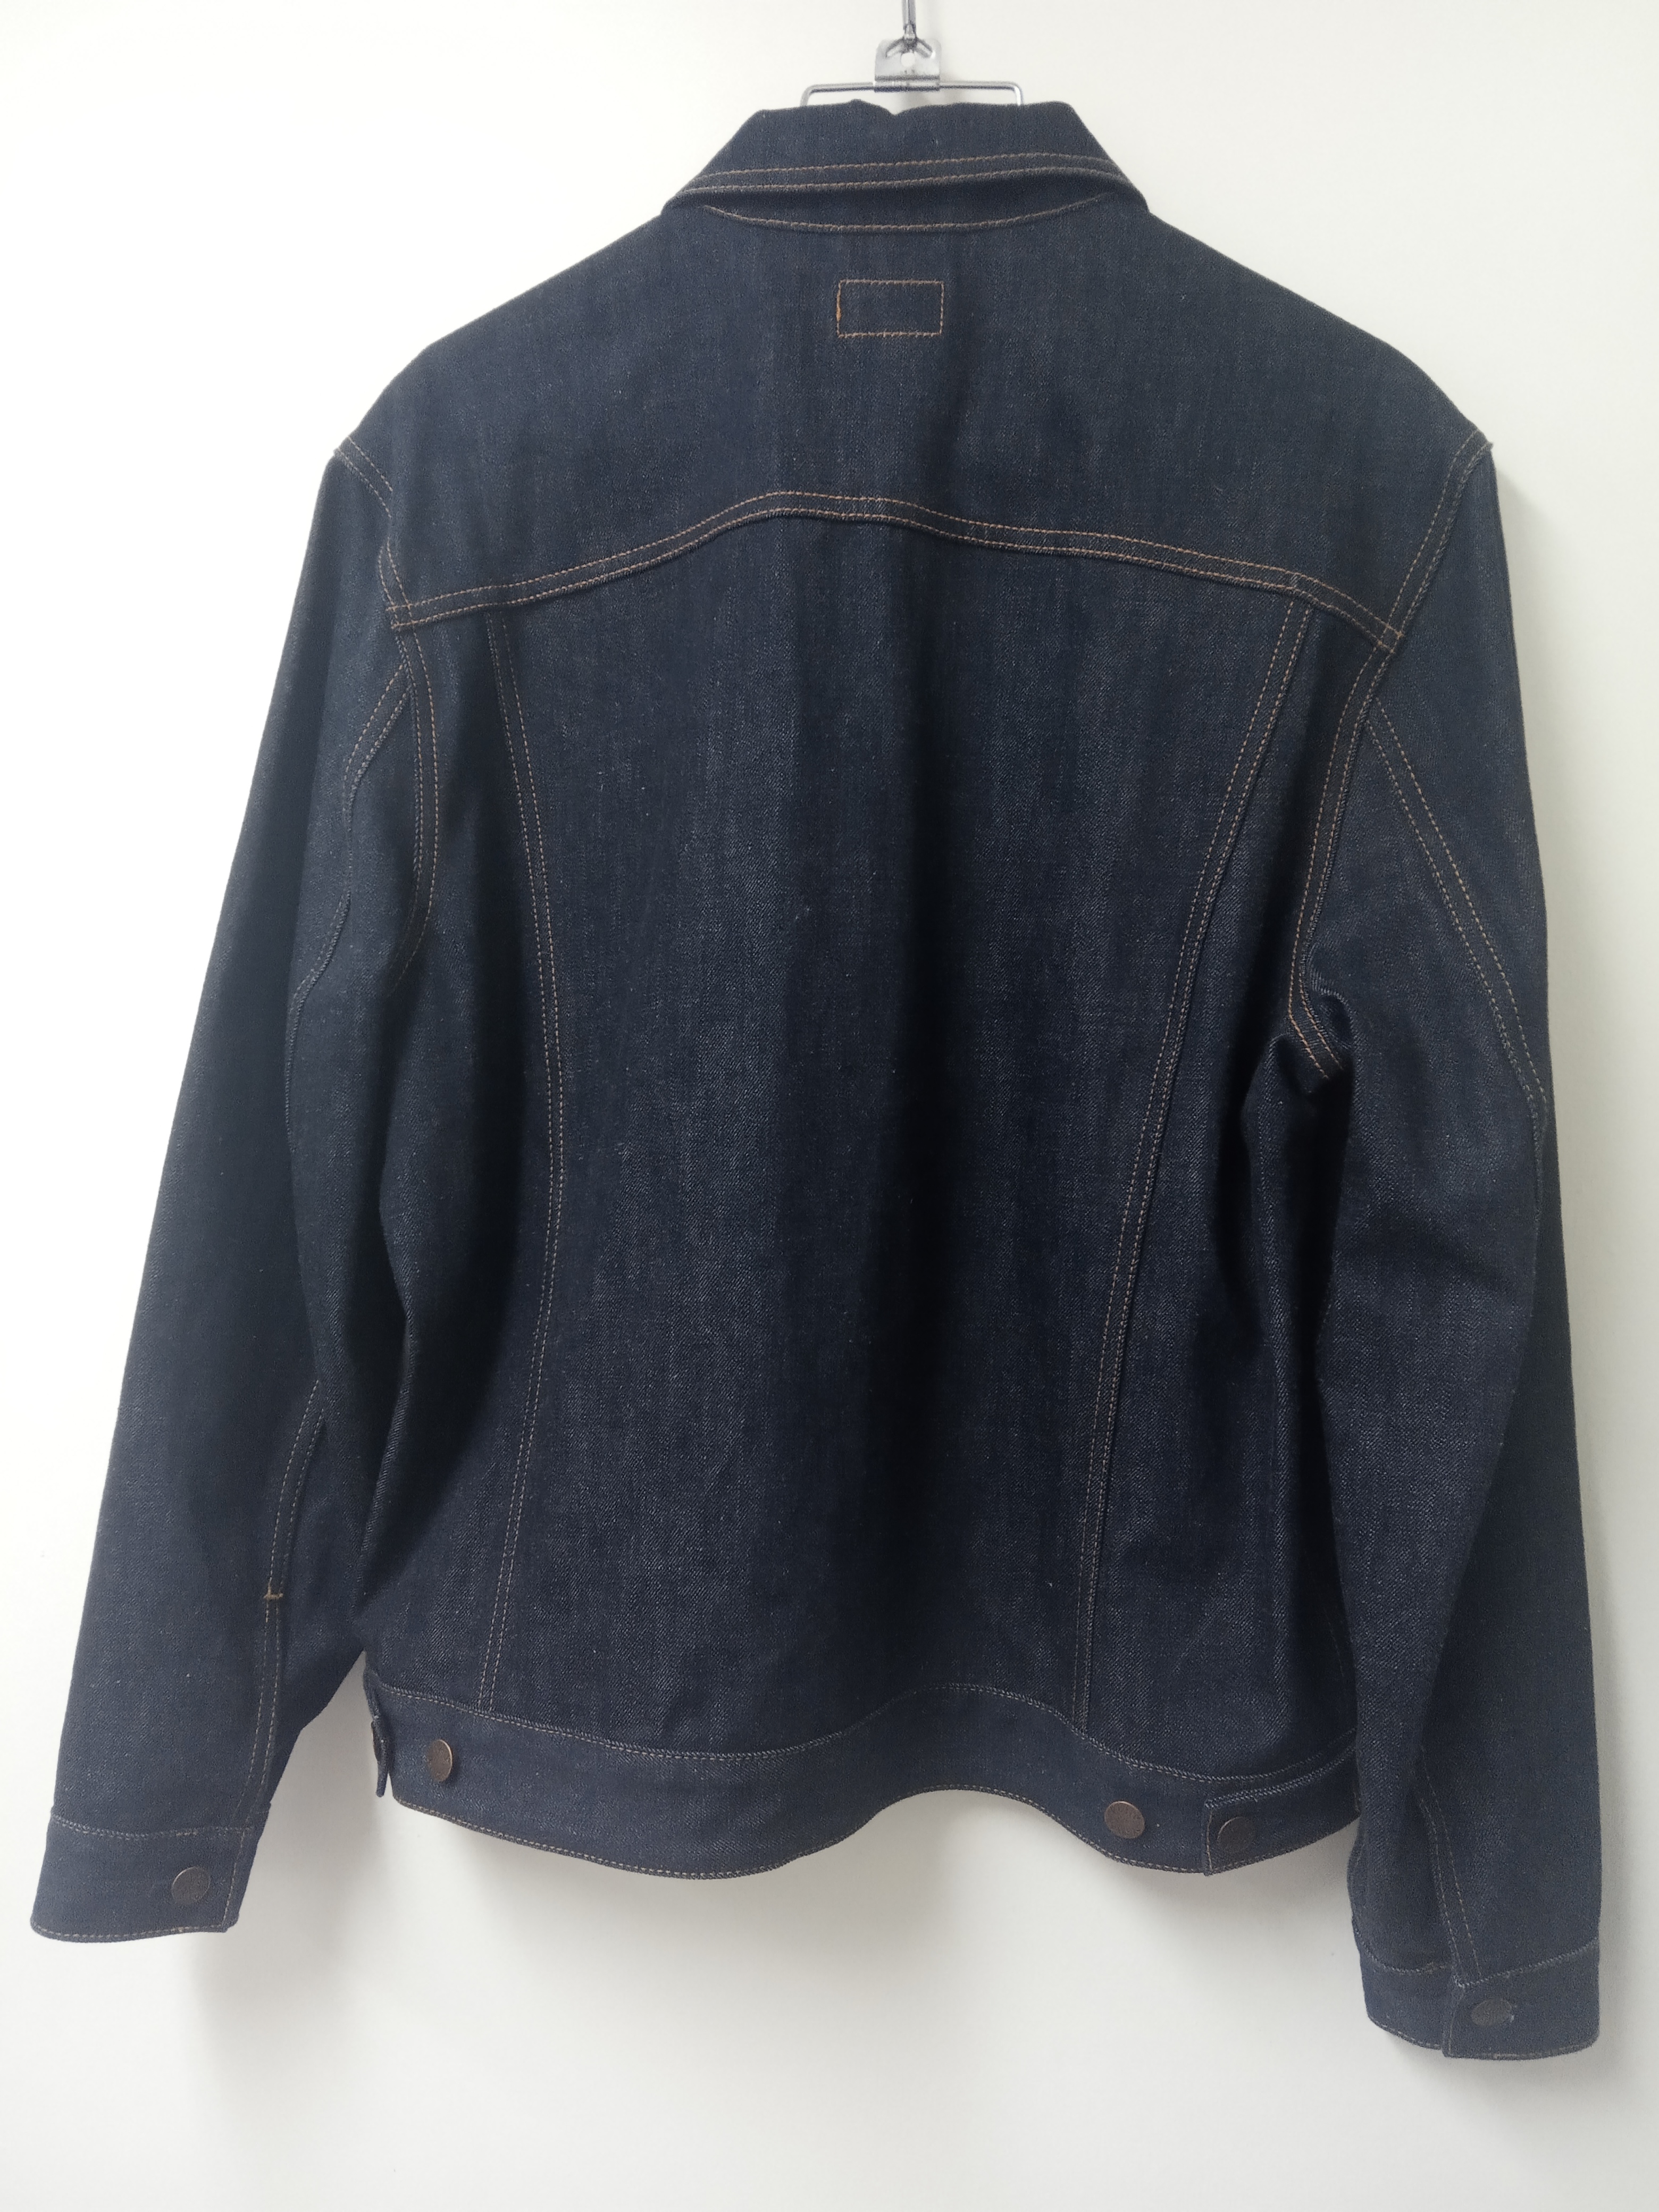 תמונה 6 ,ג'קט ג'ינס נודי למכירה בתל אביב ביגוד ואביזרים  מעילים וג'קטים